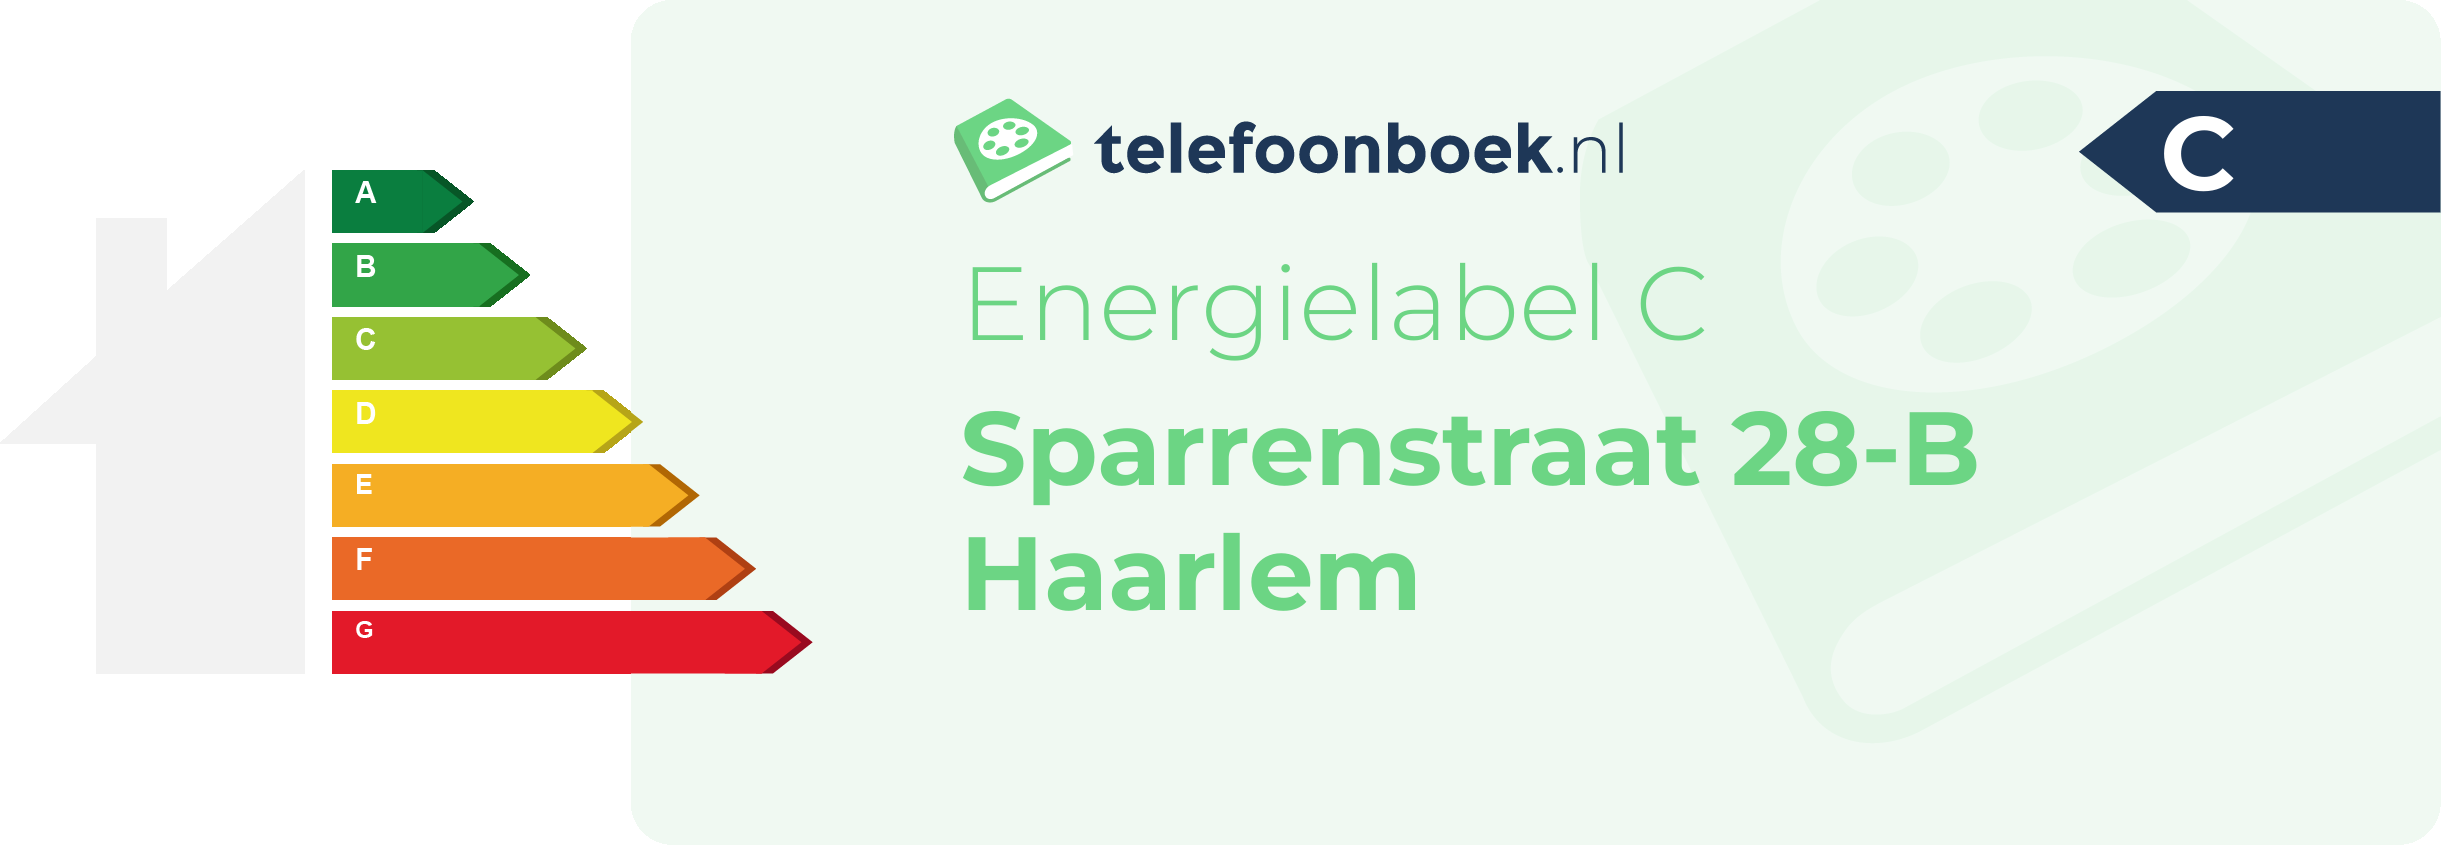 Energielabel Sparrenstraat 28-B Haarlem